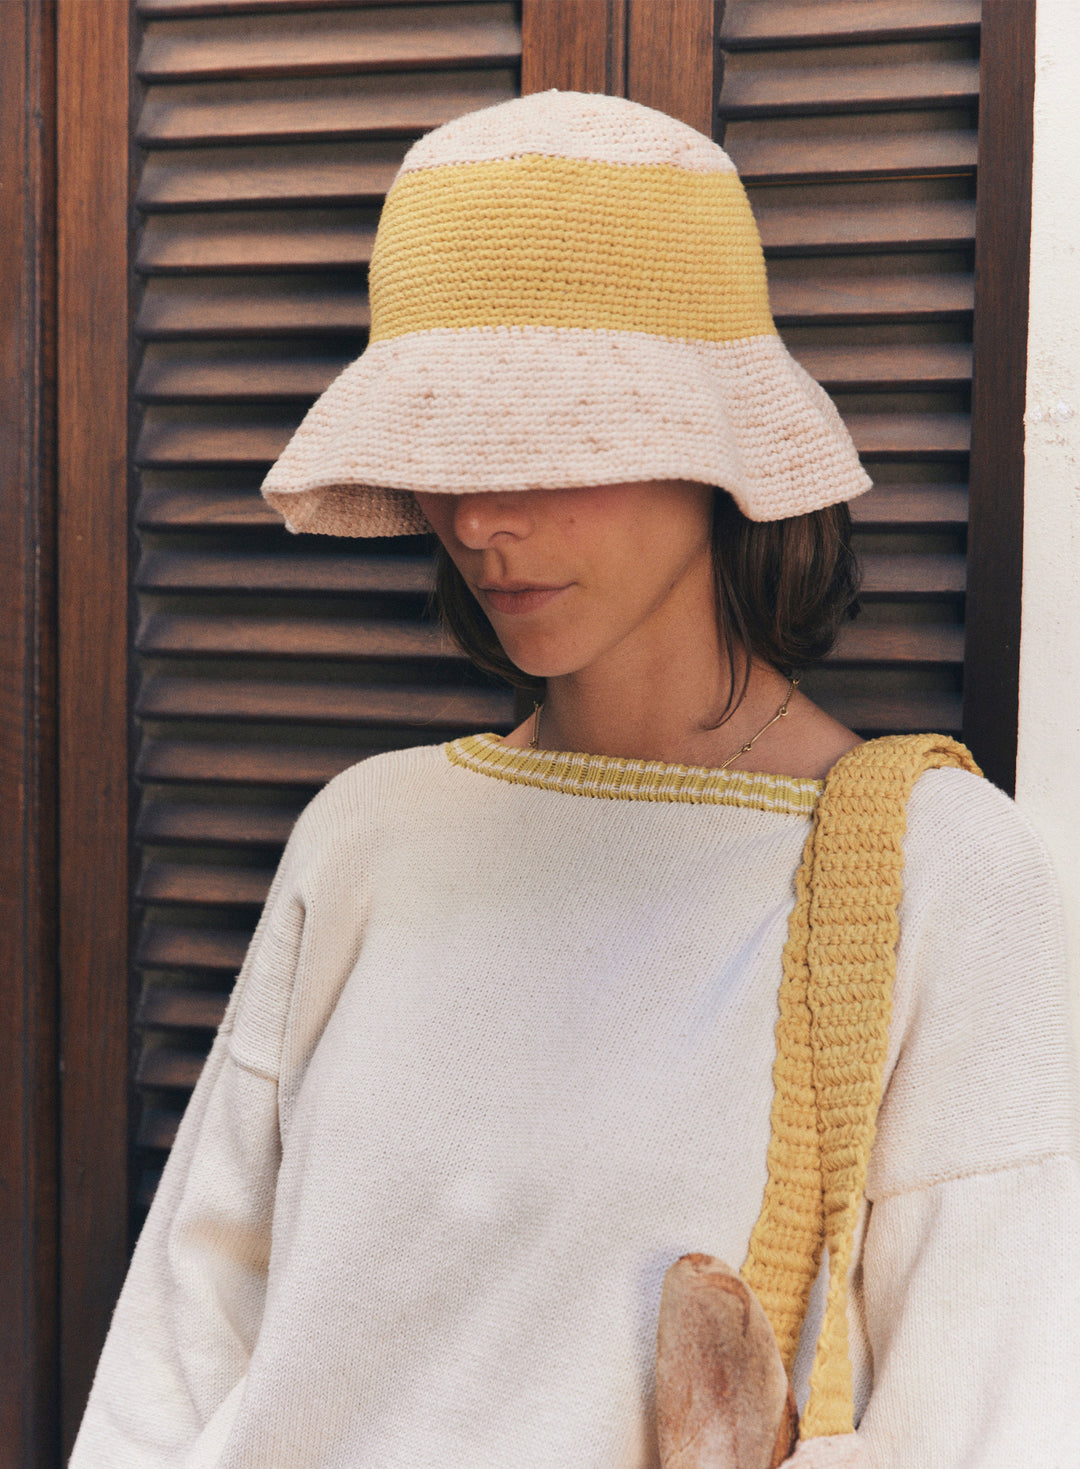 Pecan Sand Crochet Bucket Hat